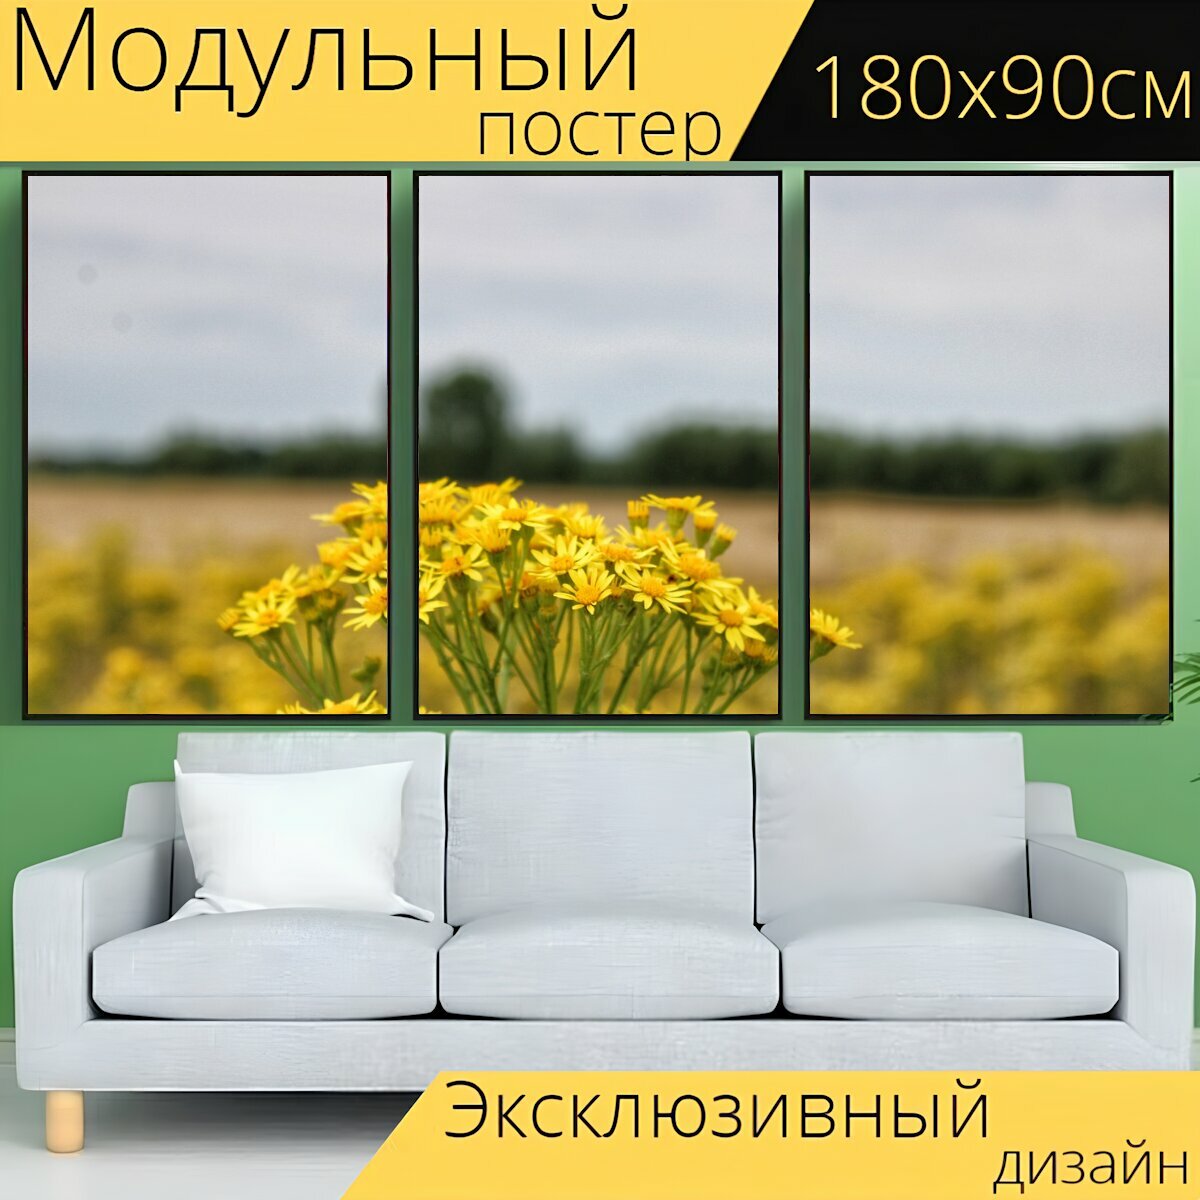 Модульный постер "Цветок, желтый, поле" 180 x 90 см. для интерьера